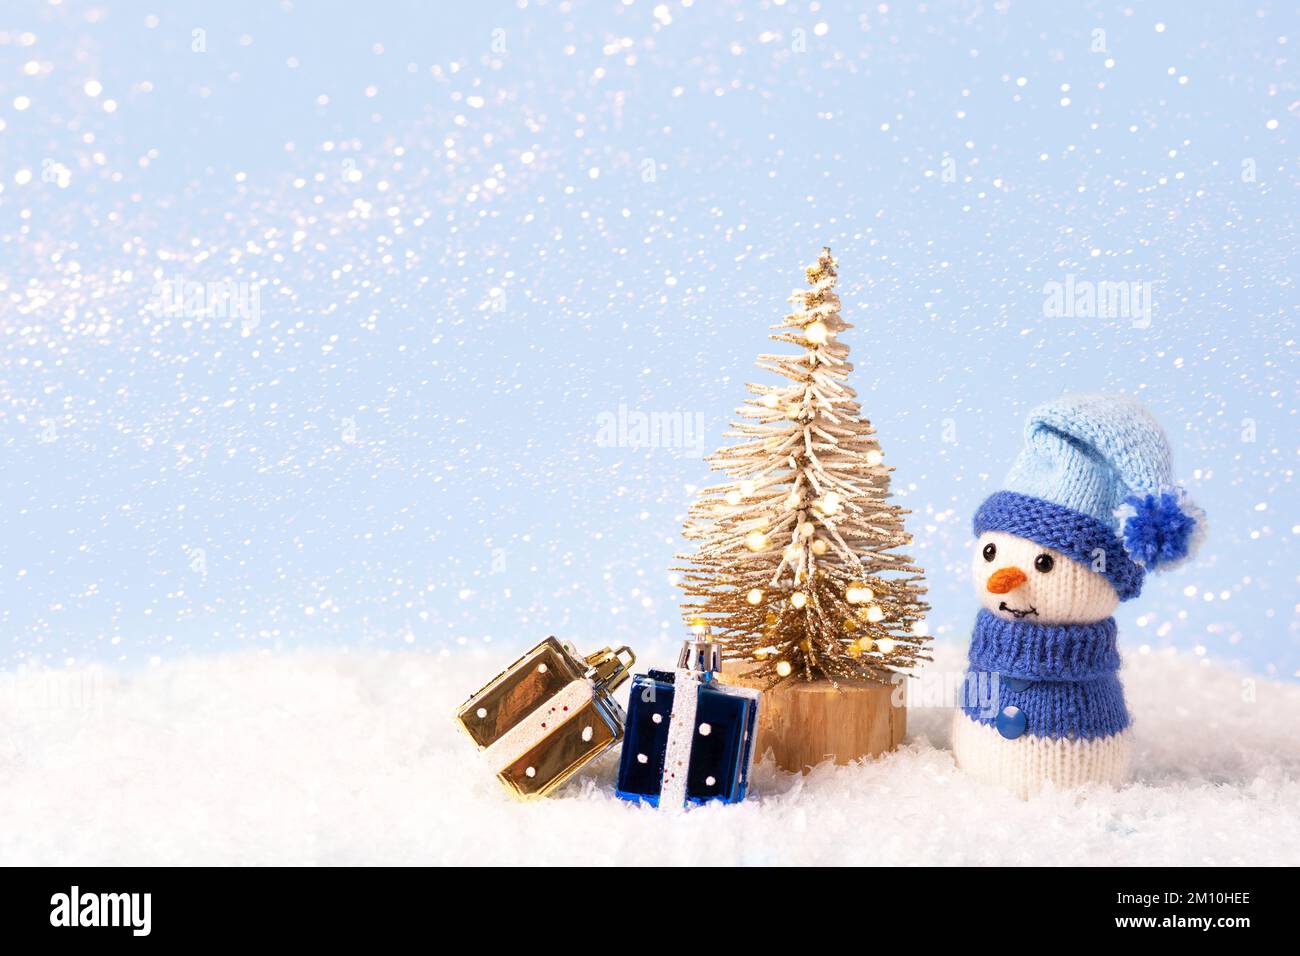 Composition de conte de fées de Noël d'un bonhomme de neige tricoté dans un bonnet et un chandail bleus. Petit arbre de Noël avec deux cadeaux jaunes et bleus Banque D'Images